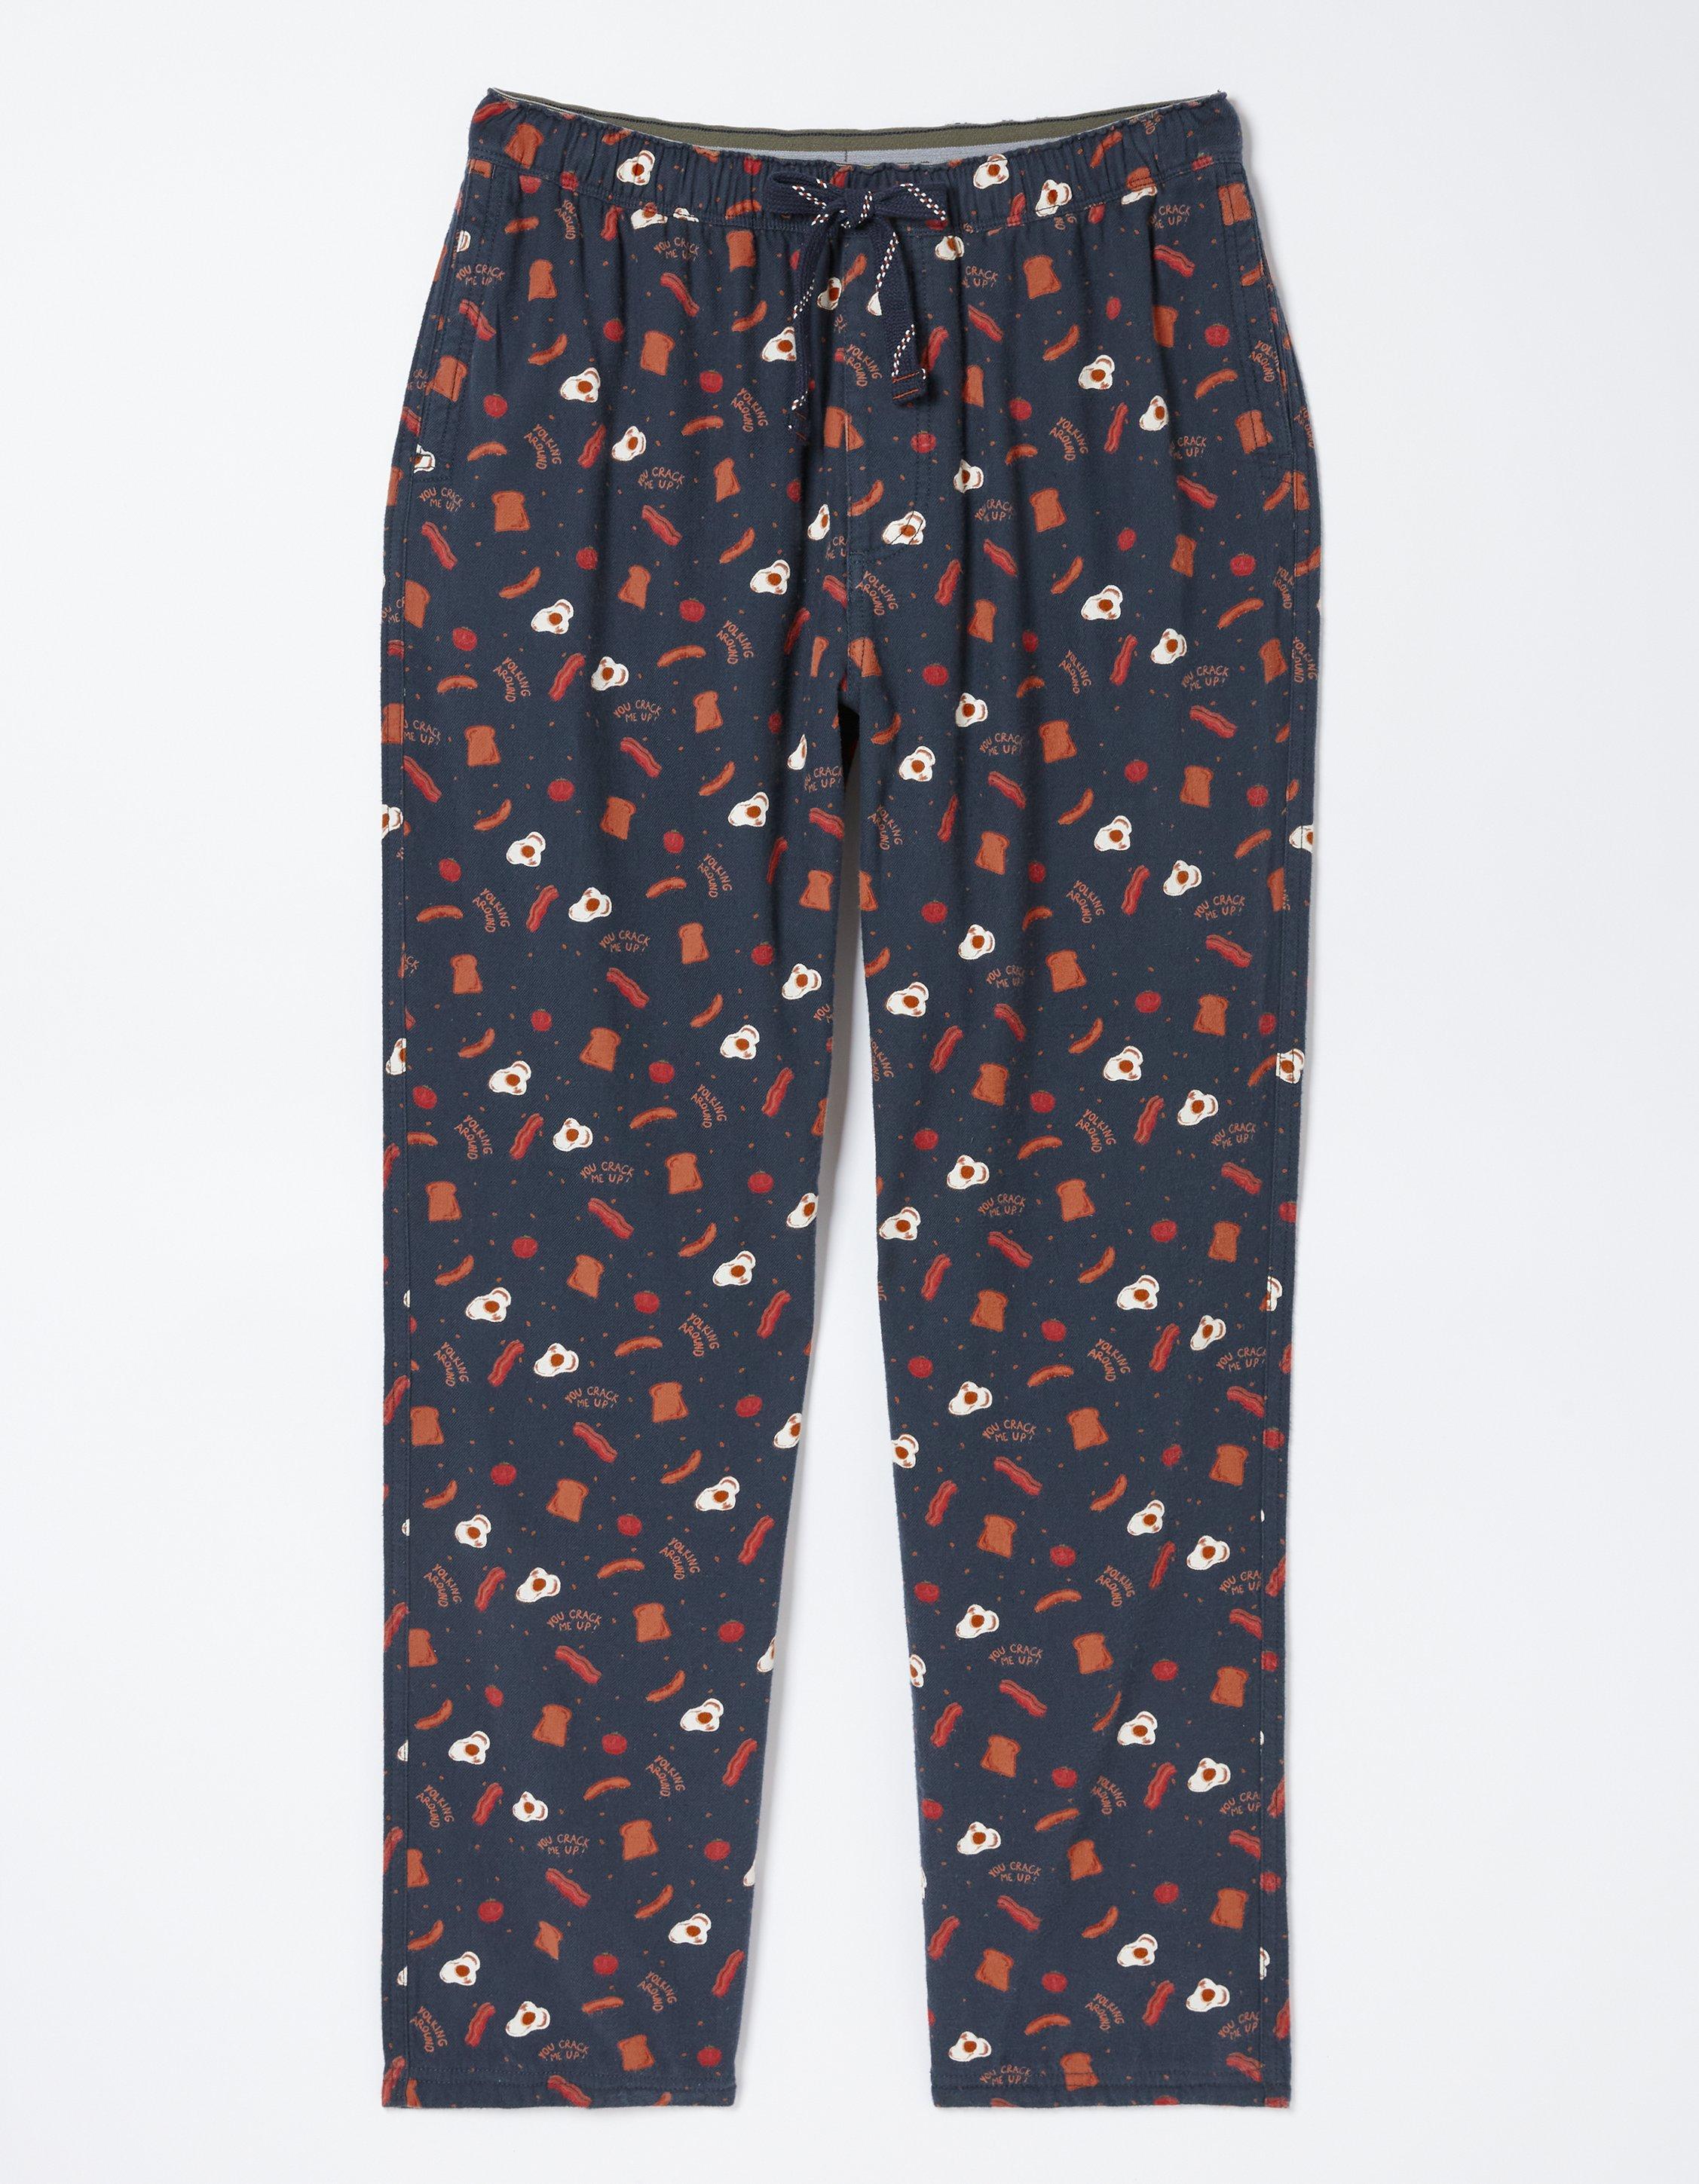 Men's Pajama Shorts Black Cheeky Cat Sleep Shorts for Men Pajama Bottom  Pants with Drawstring & Pockets S at  Men's Clothing store